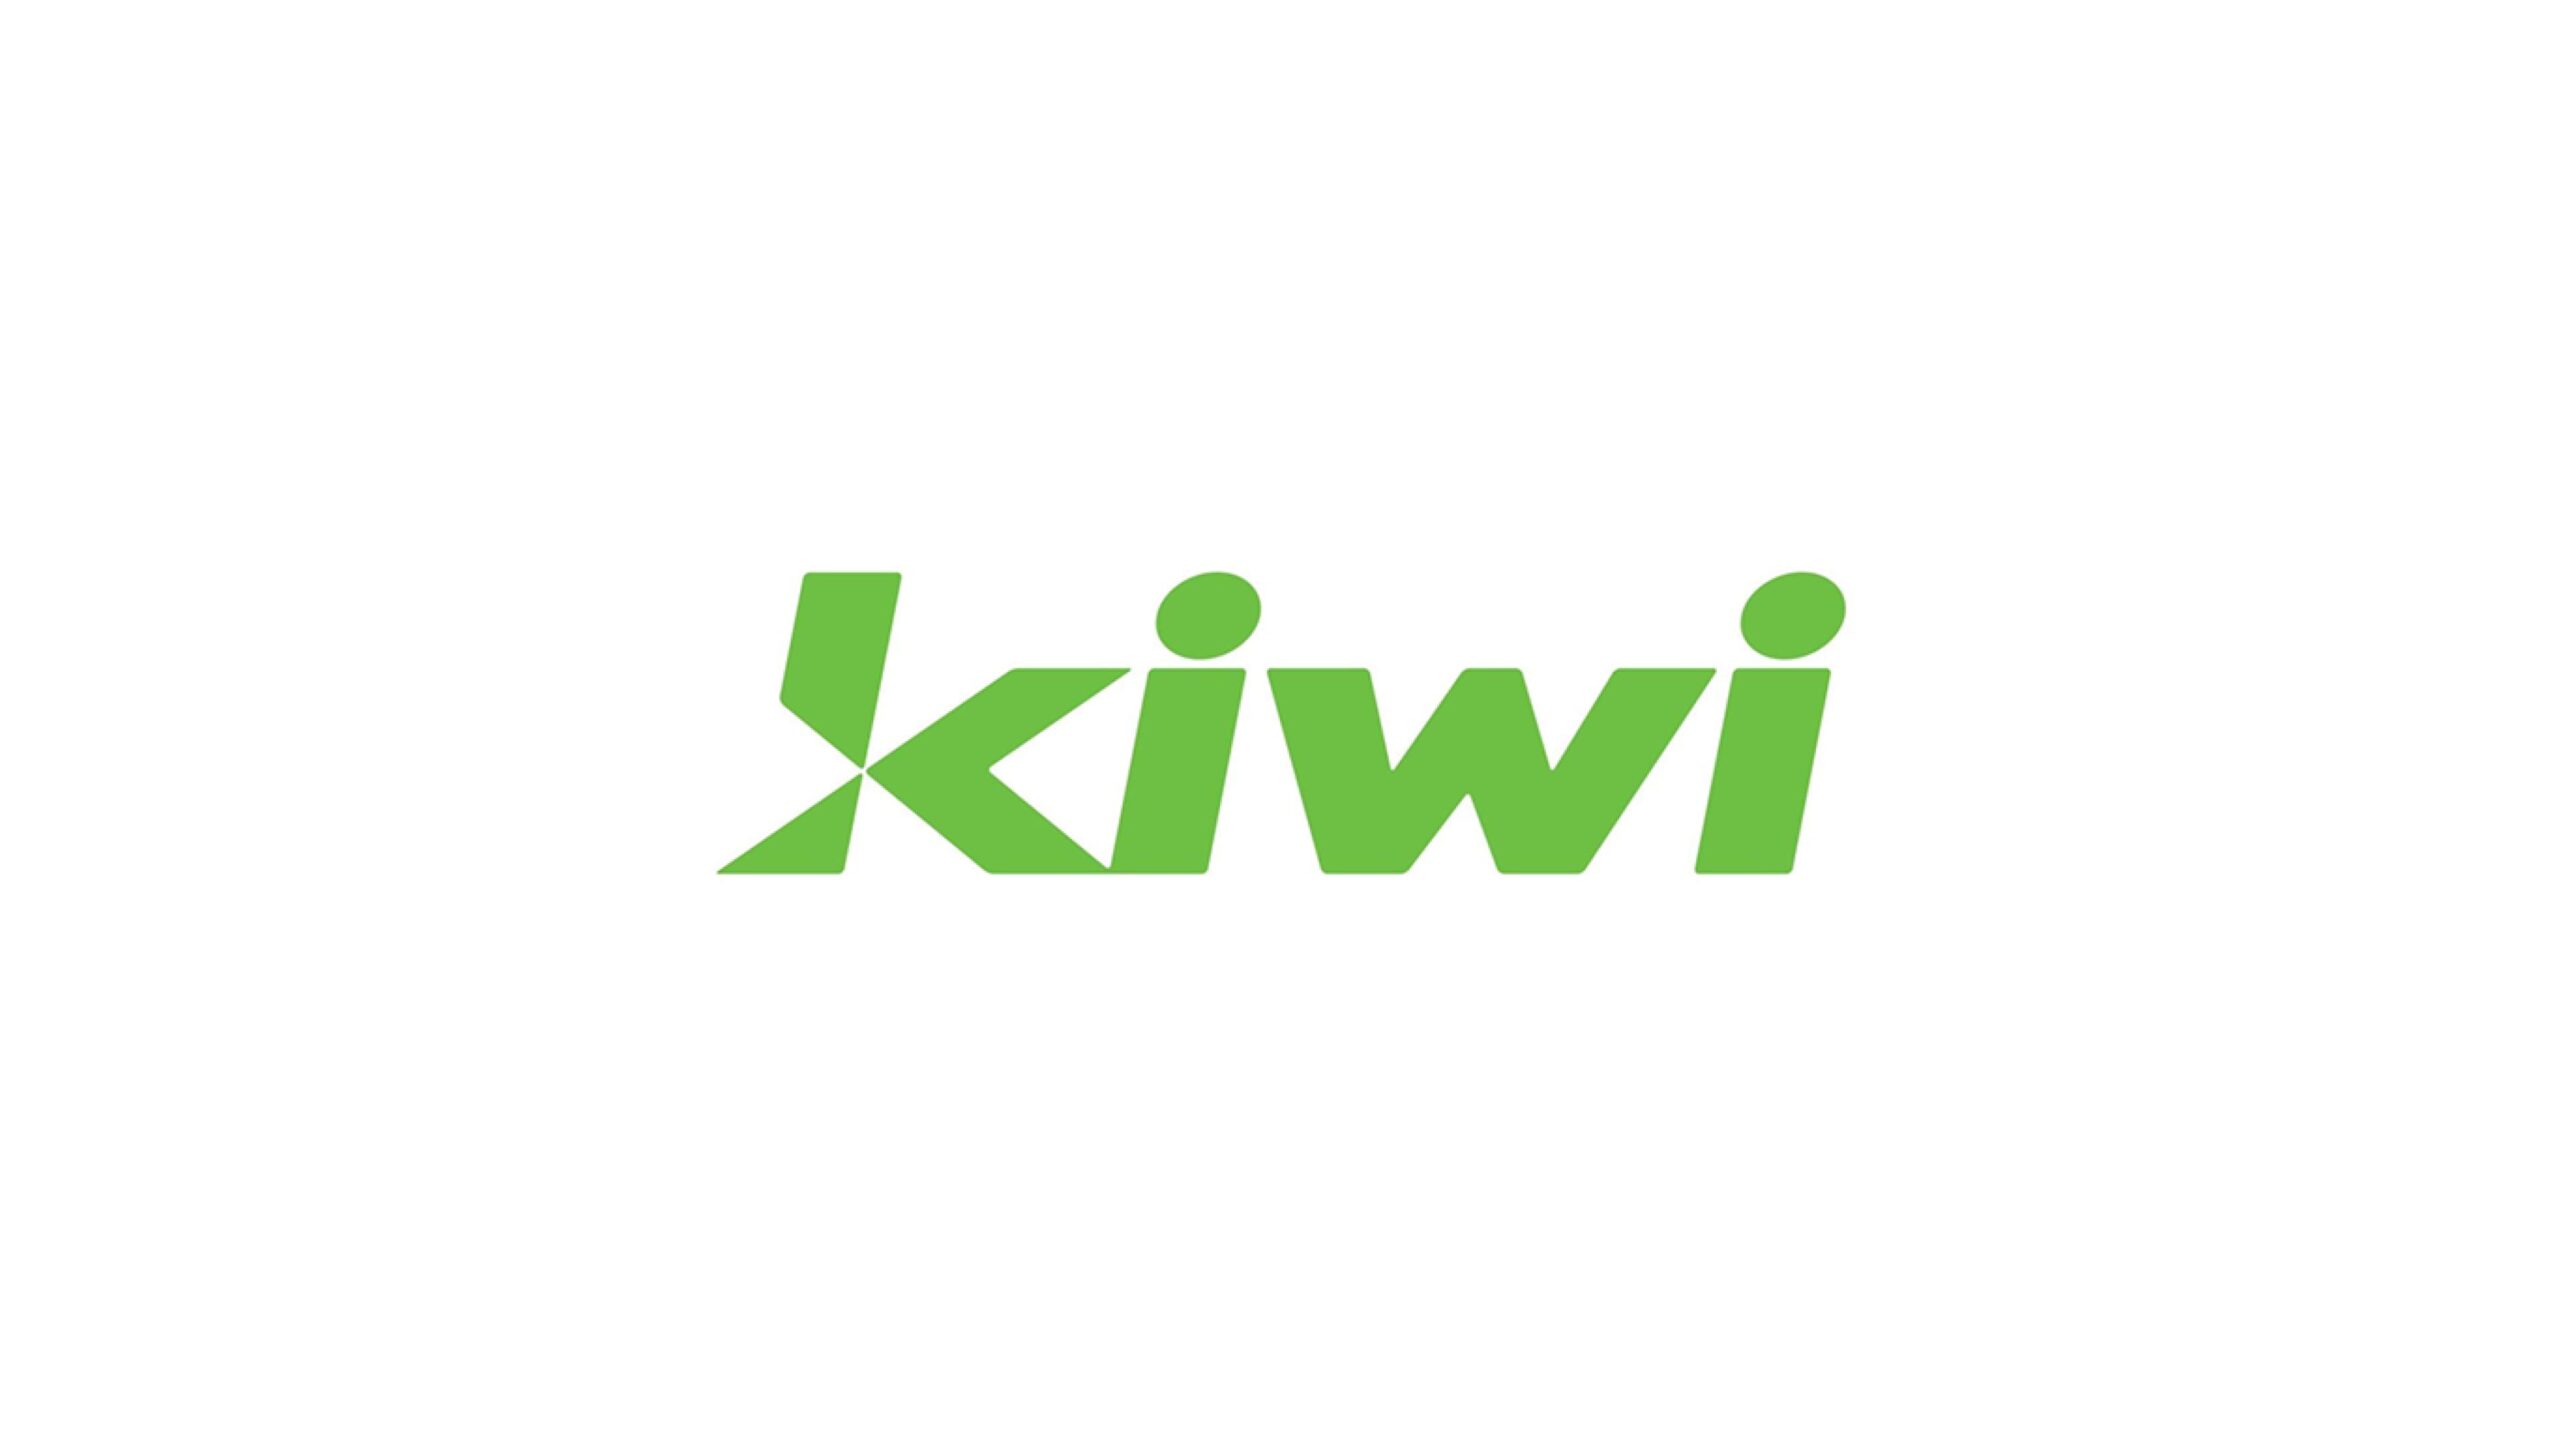 フィンテック企業Kiwi、UPI連動クレジットカードの提供拡大のため1,300万ドルの資金調達